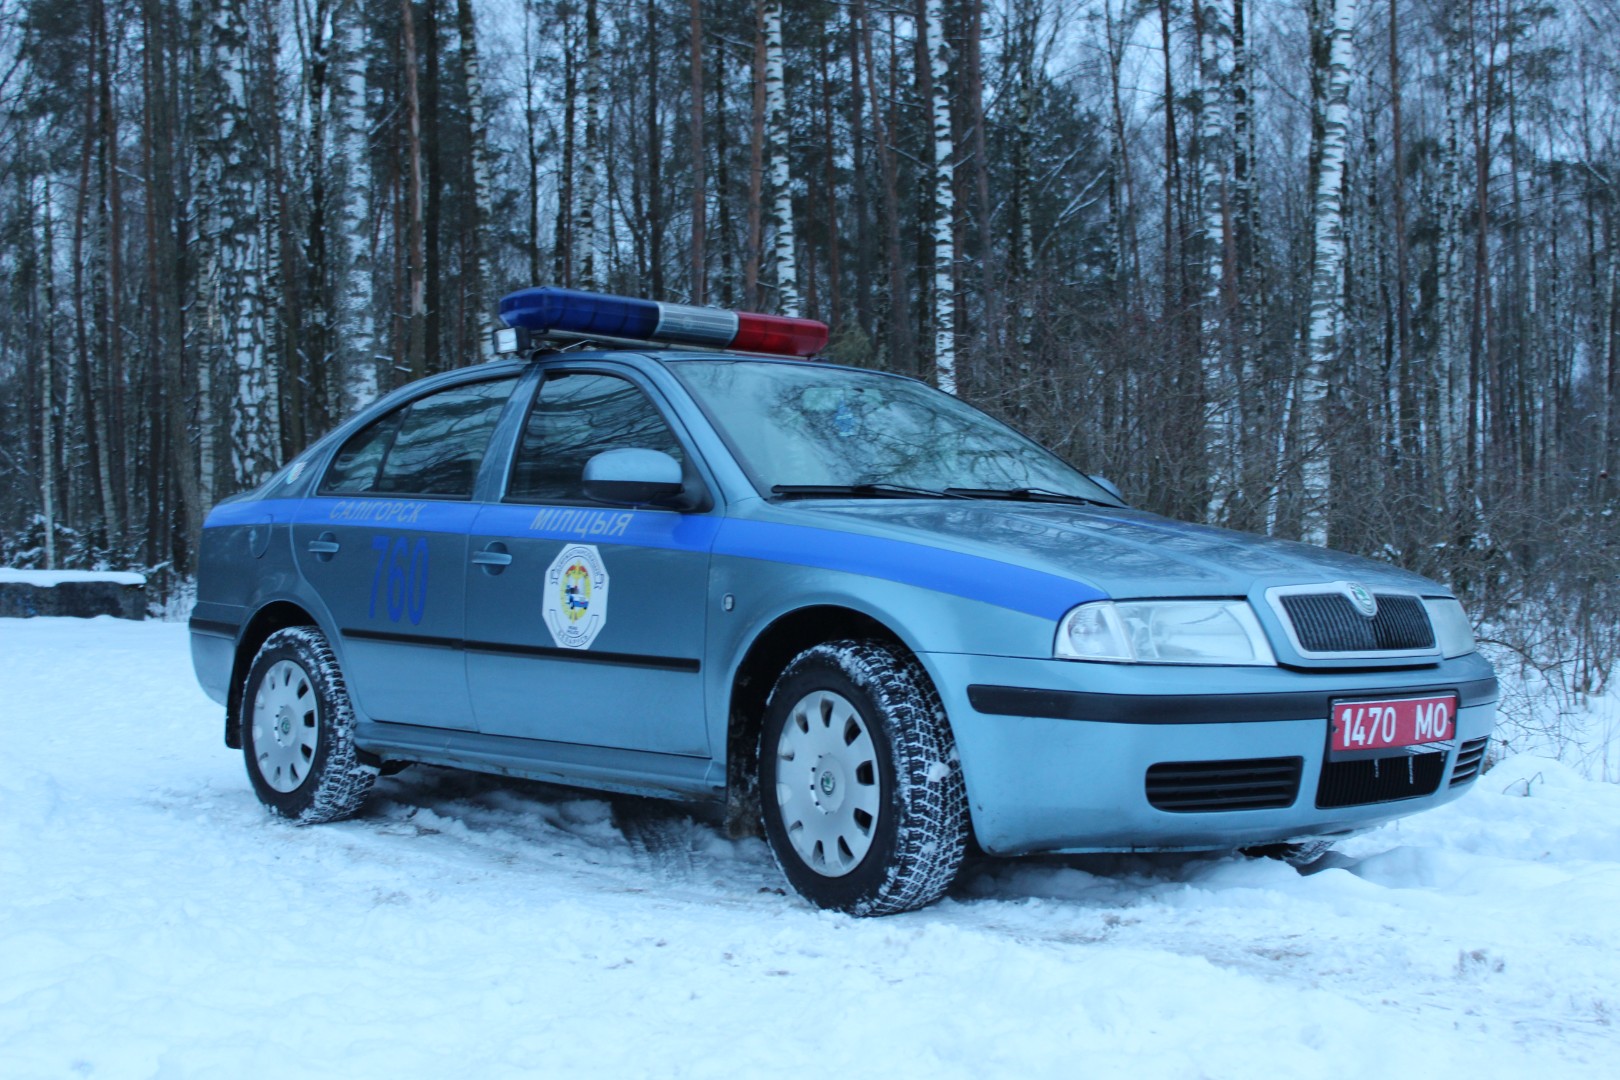 С 24.12 по 27.12 пройдет отработка аварийно-опасных участков автодорог и населенных пунктов Солигорского района.